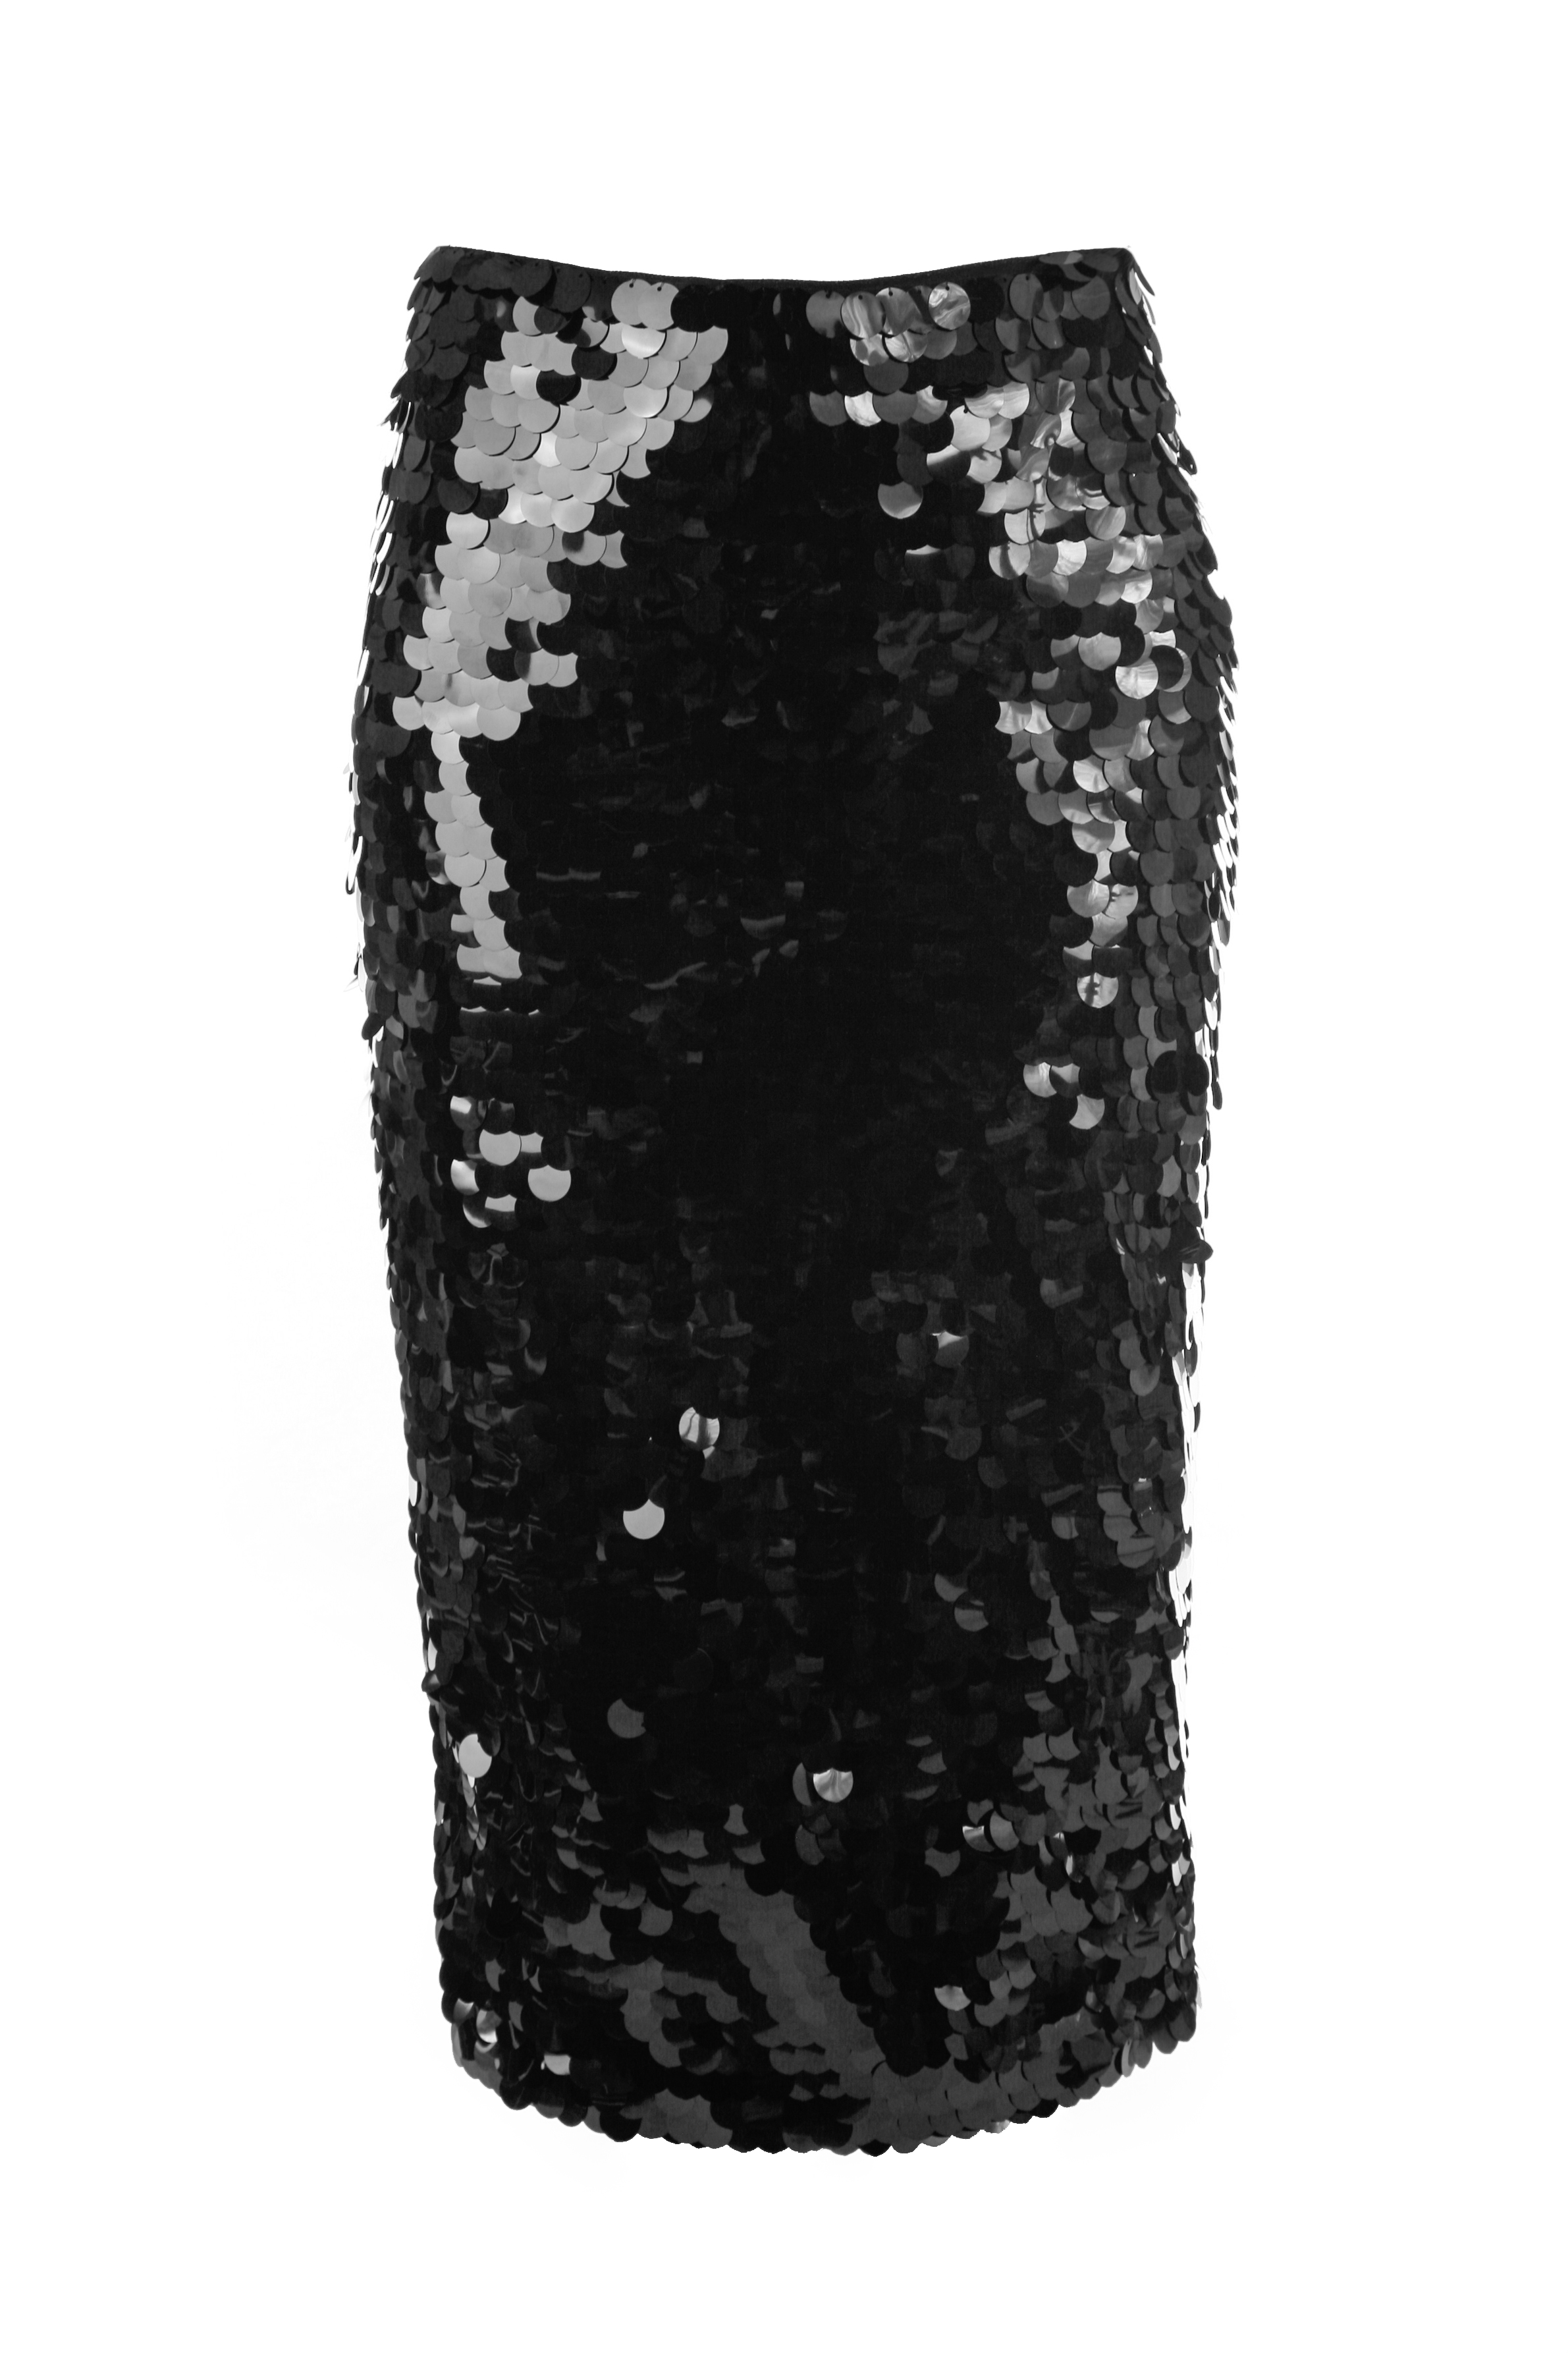 Юбка с пайетками (арт. baon B478529), размер XS, цвет черный Юбка с пайетками (арт. baon B478529) - фото 2